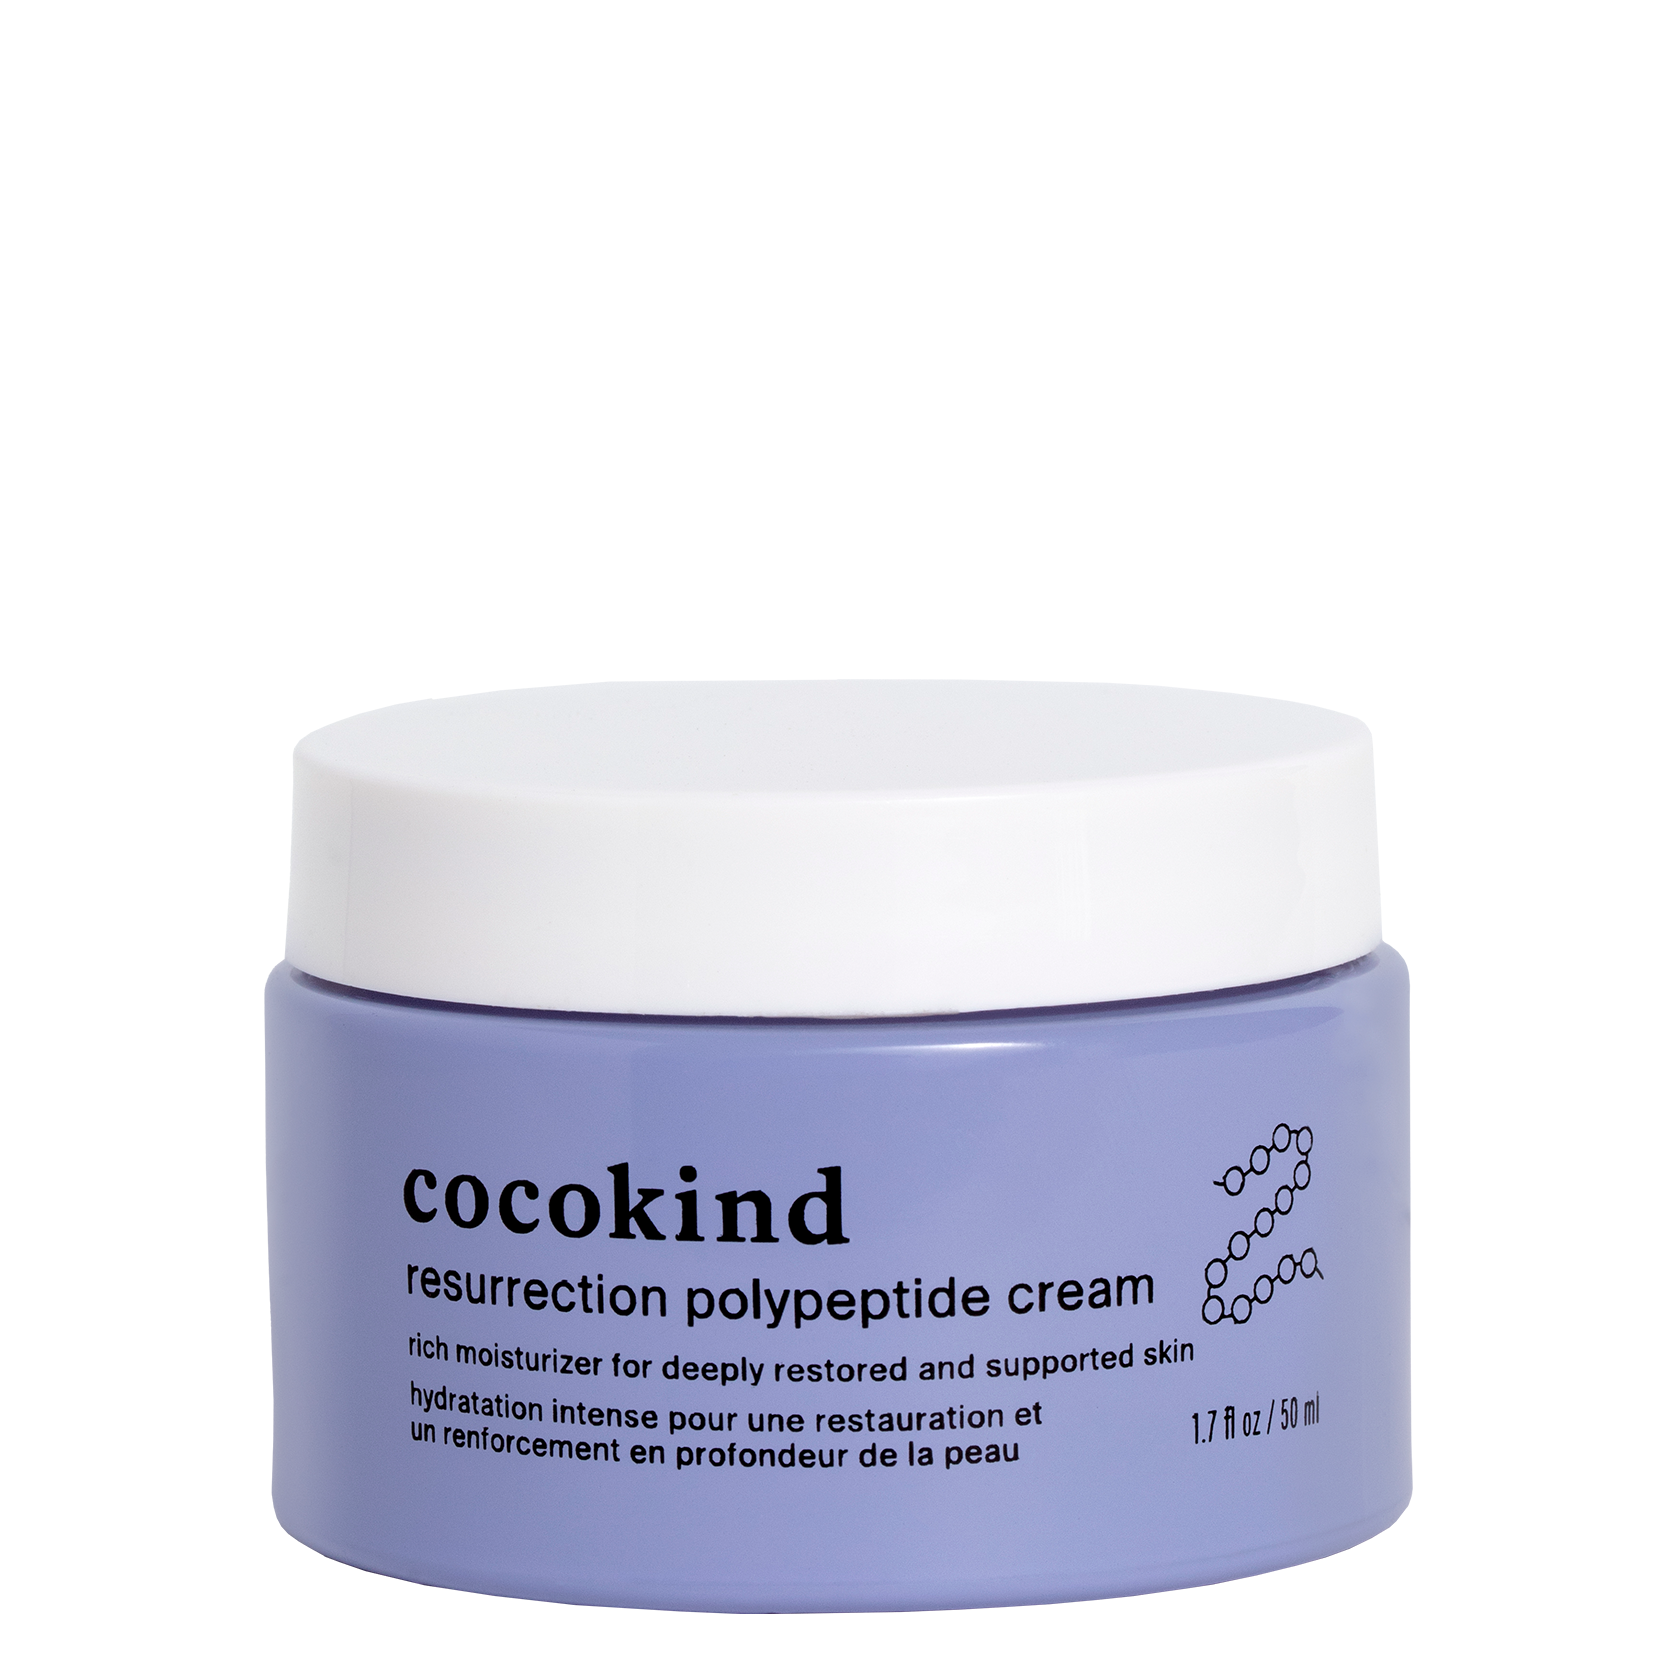 Cocokind polypeptide cream